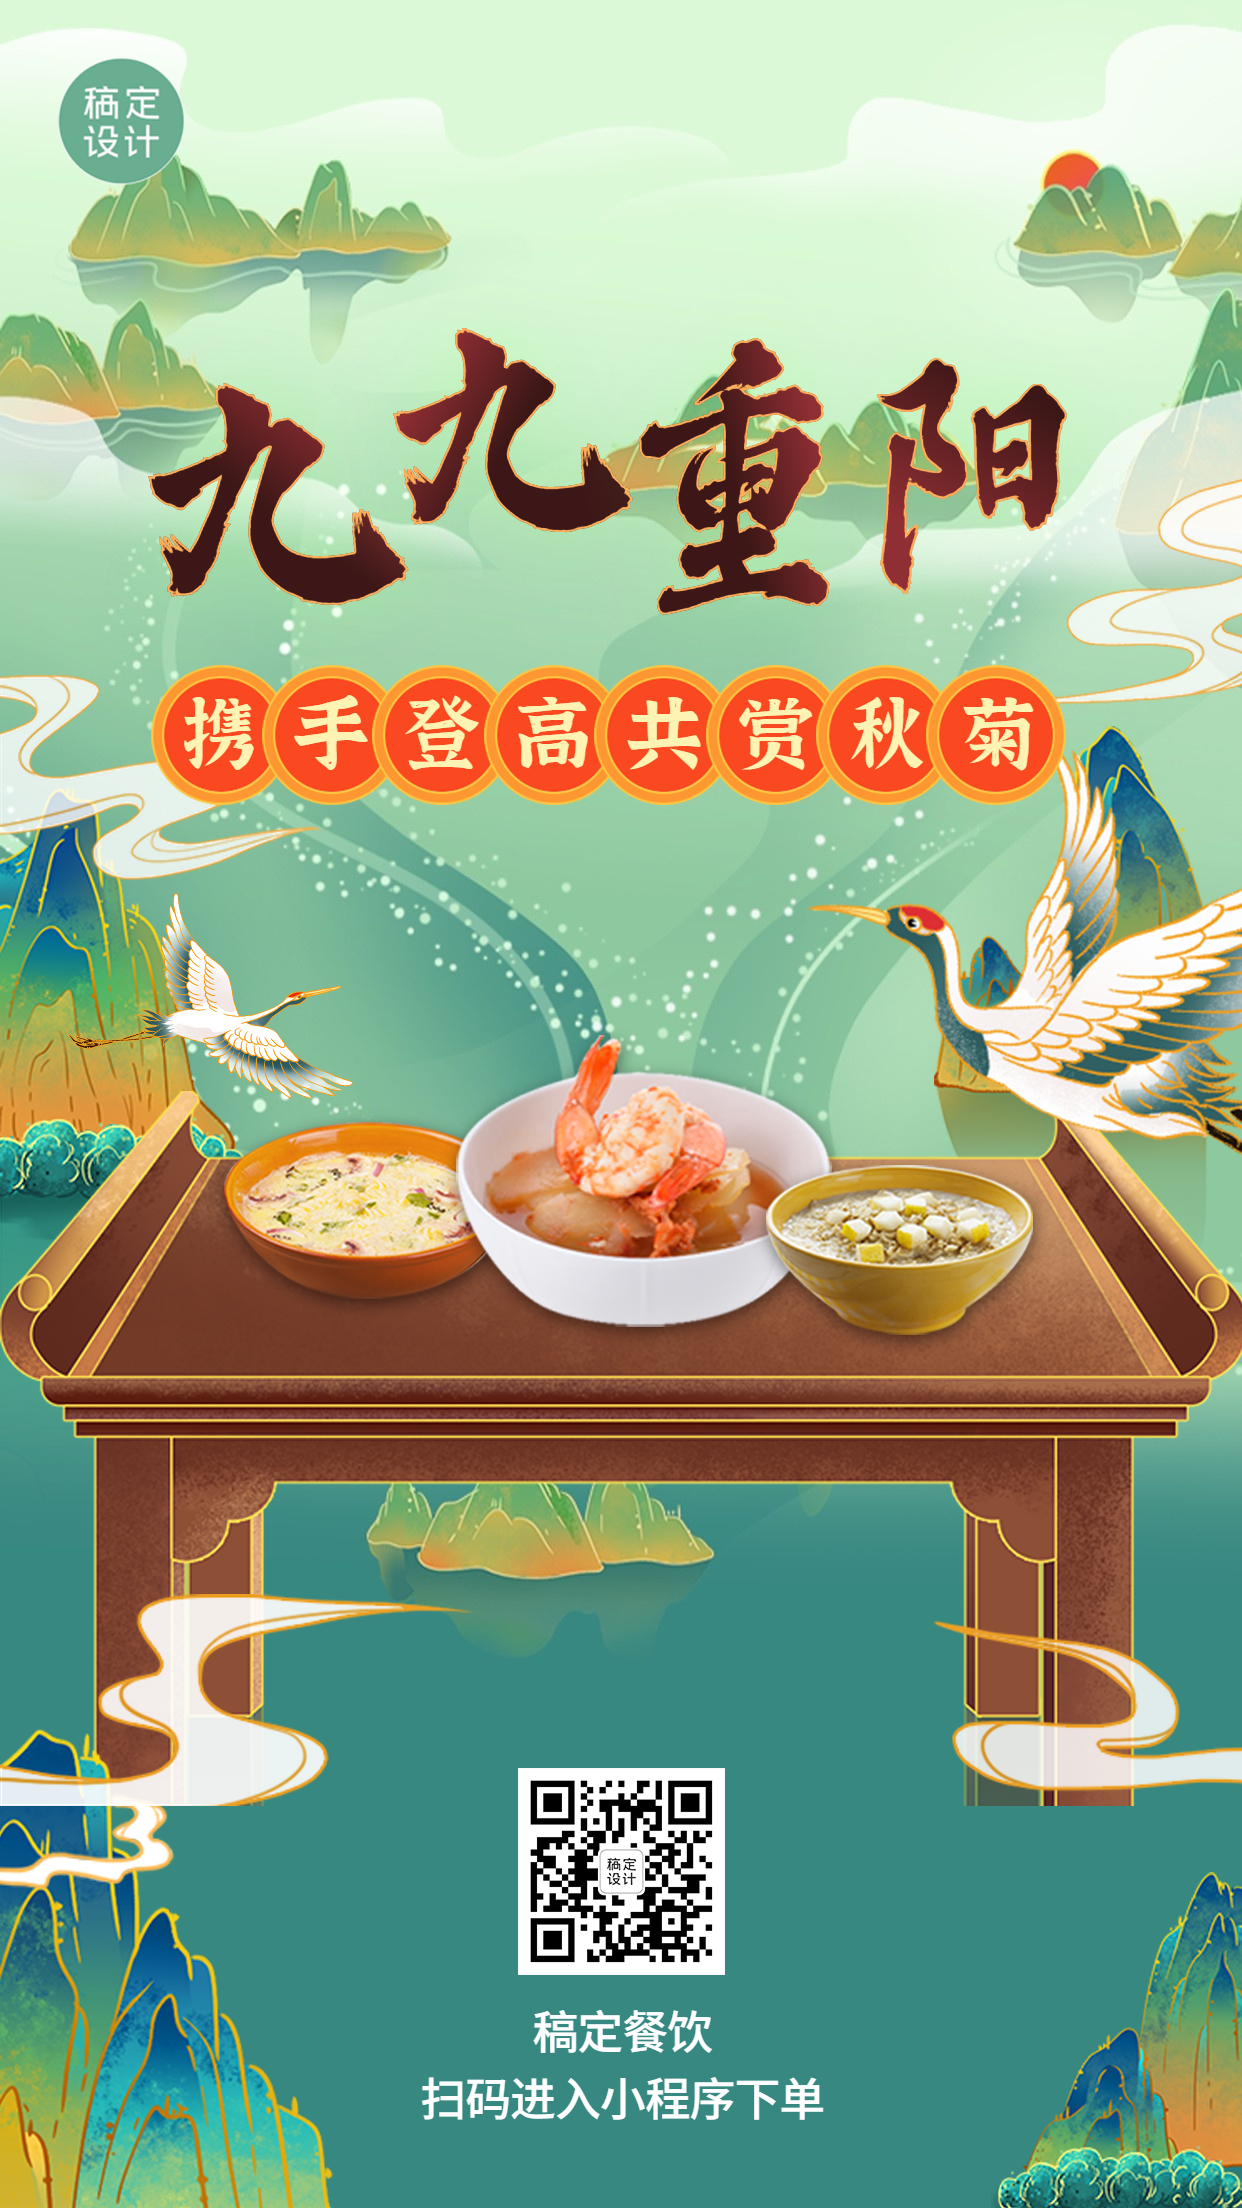 重阳节中餐正餐节日营销手绘手机海报